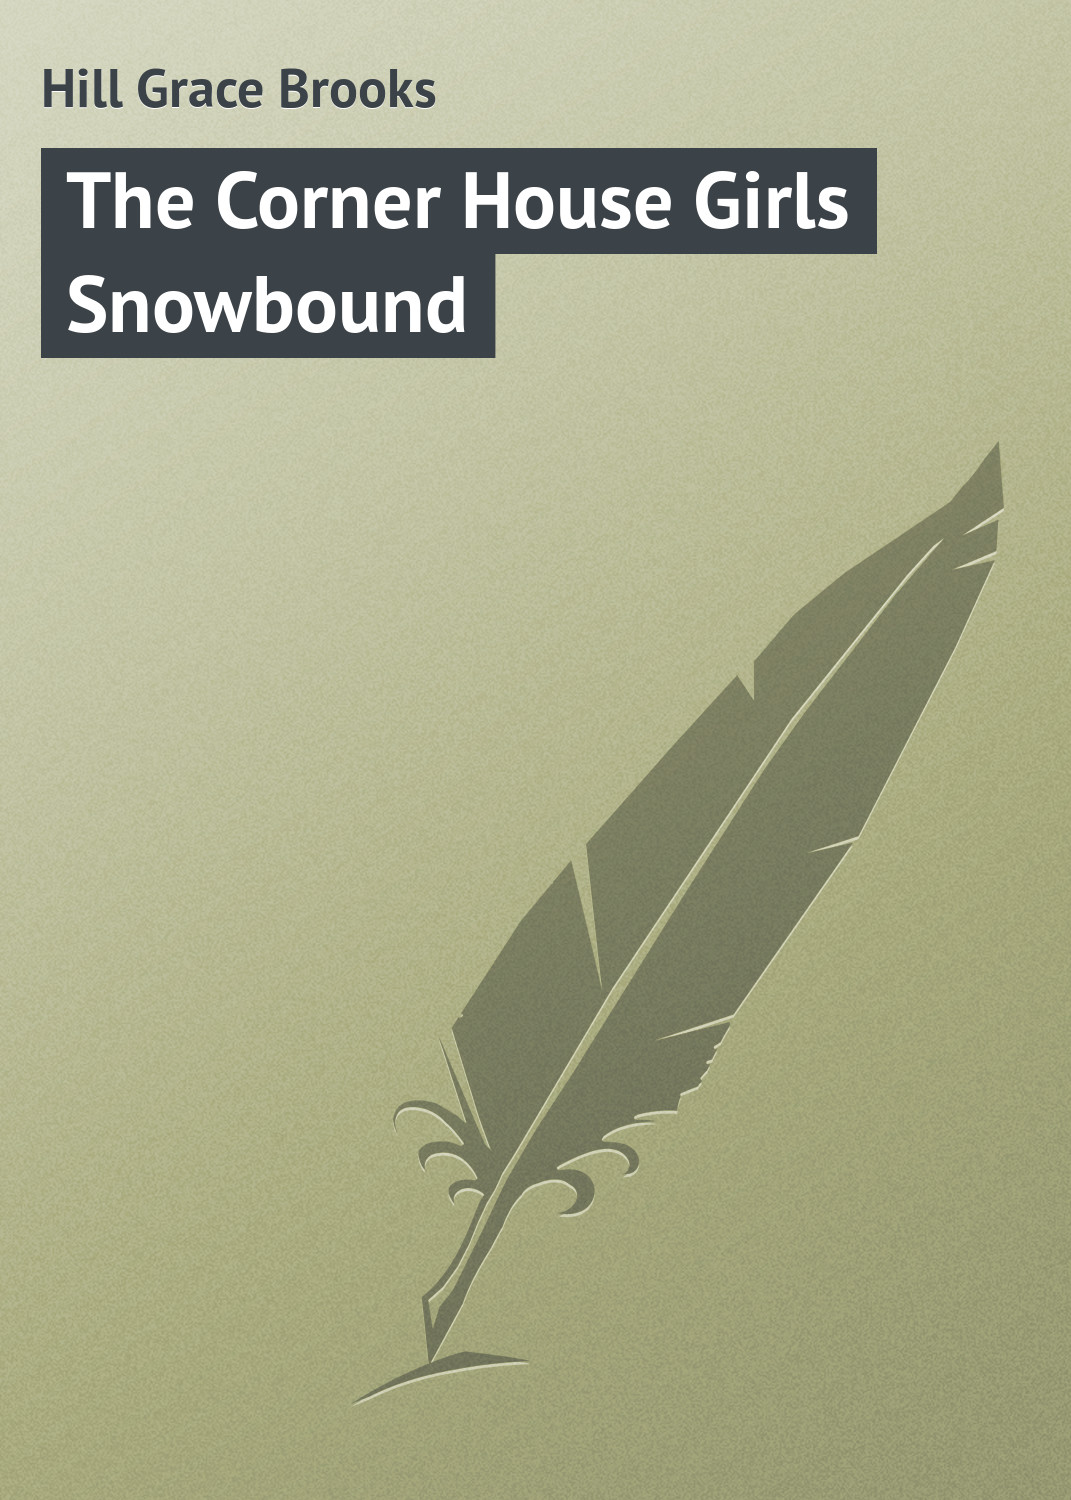 Книга The Corner House Girls Snowbound из серии , созданная Grace Hill, может относится к жанру Иностранные языки, Зарубежная классика, Зарубежные детские книги. Стоимость электронной книги The Corner House Girls Snowbound с идентификатором 23163091 составляет 5.99 руб.